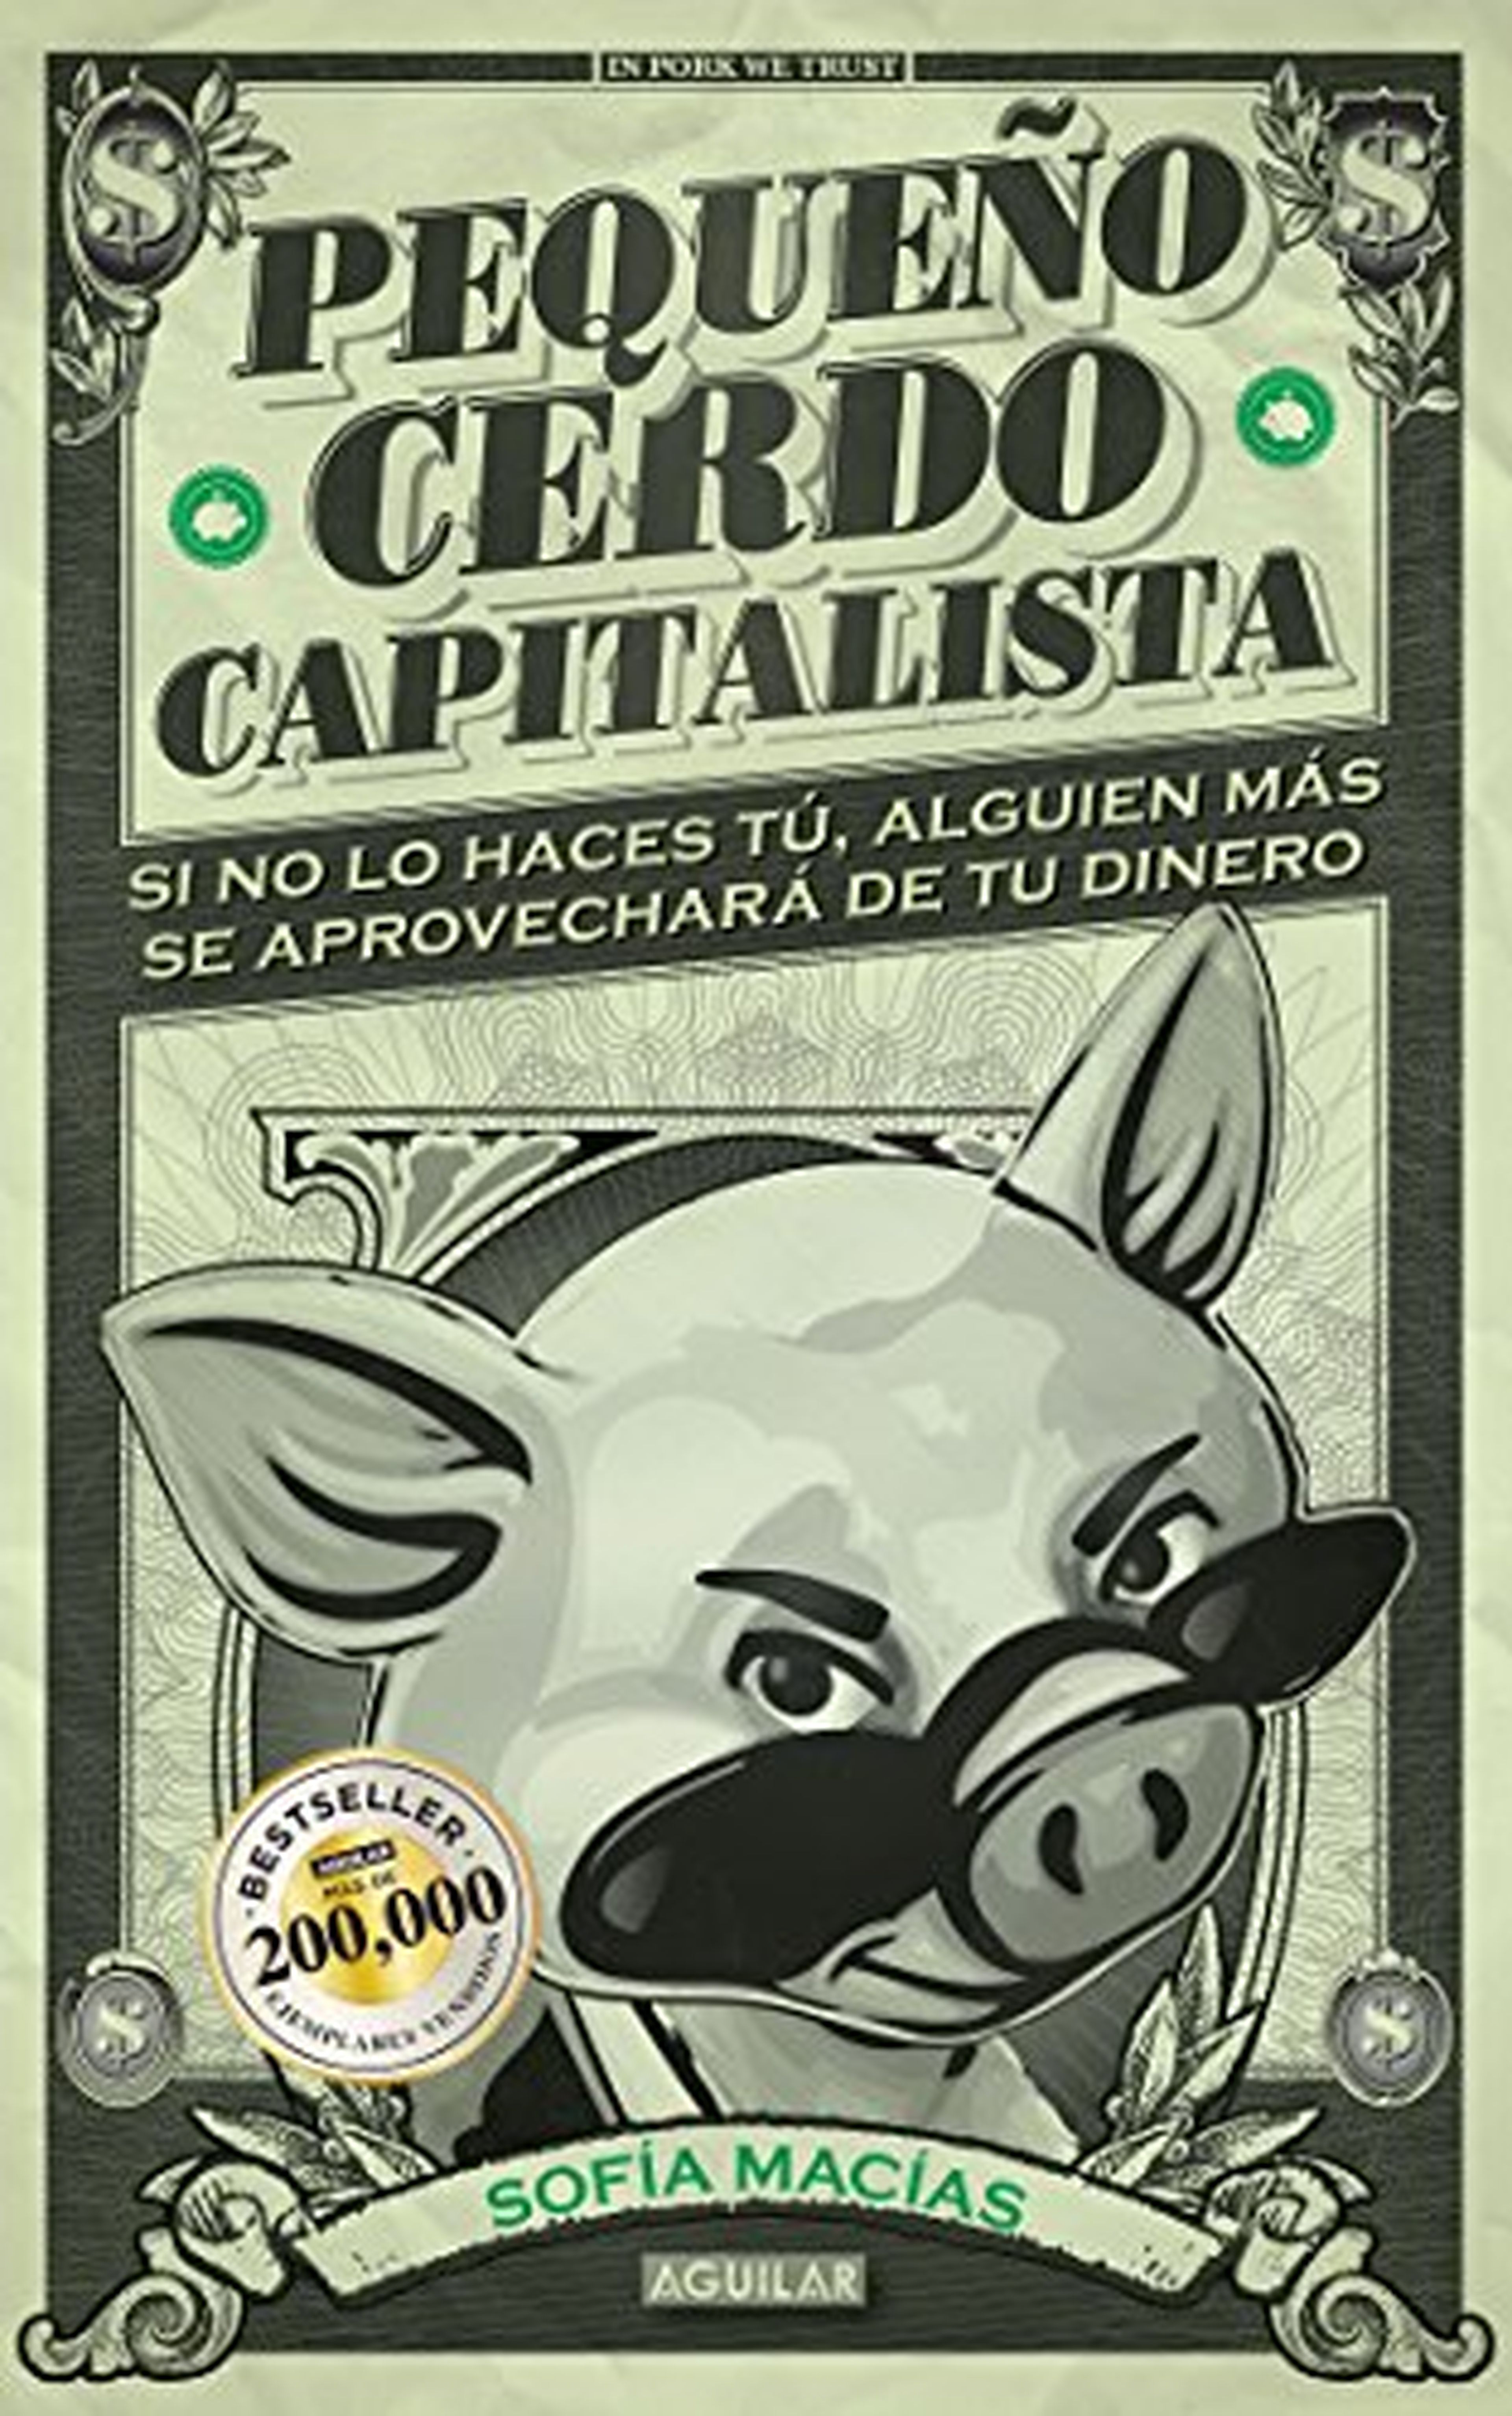 Pequeño cerdo capitalista.